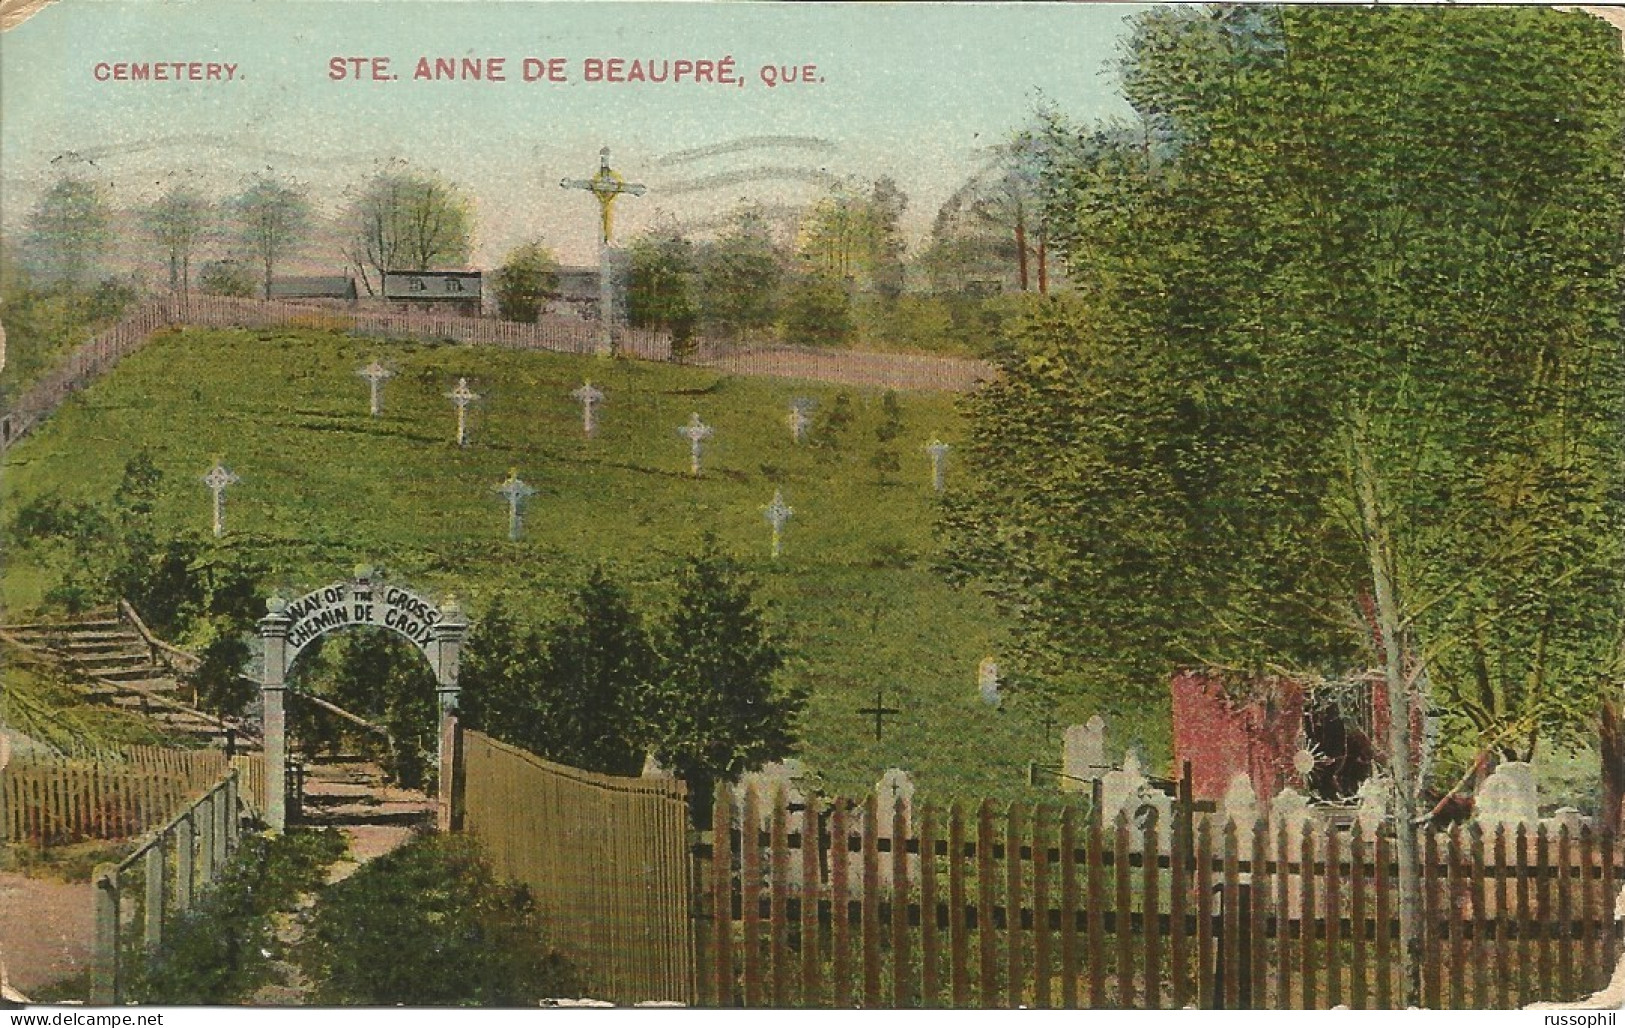 CANADA - QUEBEC - STE ANNE DE BEAUPRE - CEMETERY - PUB. MONTREAL IMPORT CO. - 1914 - Ste. Anne De Beaupré